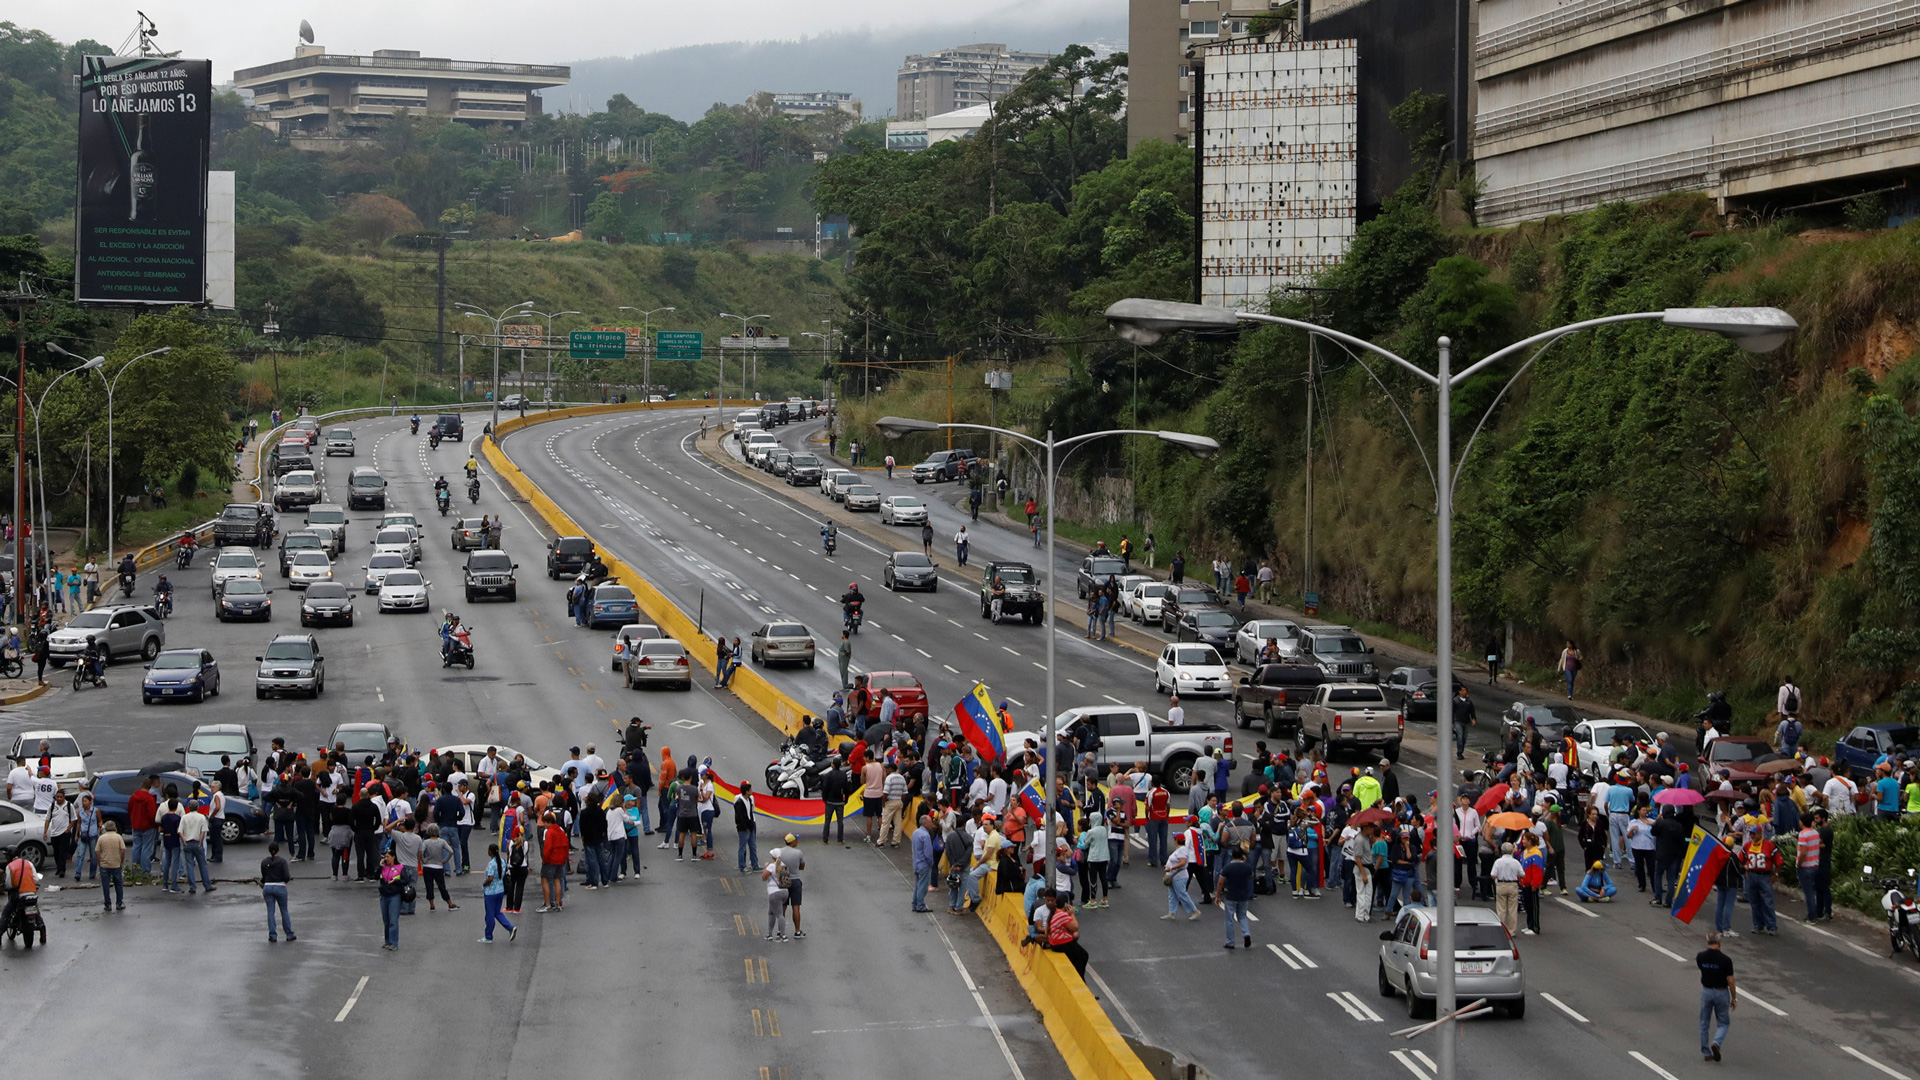 Asesinado un líder estudiantil venezolano en una universidad